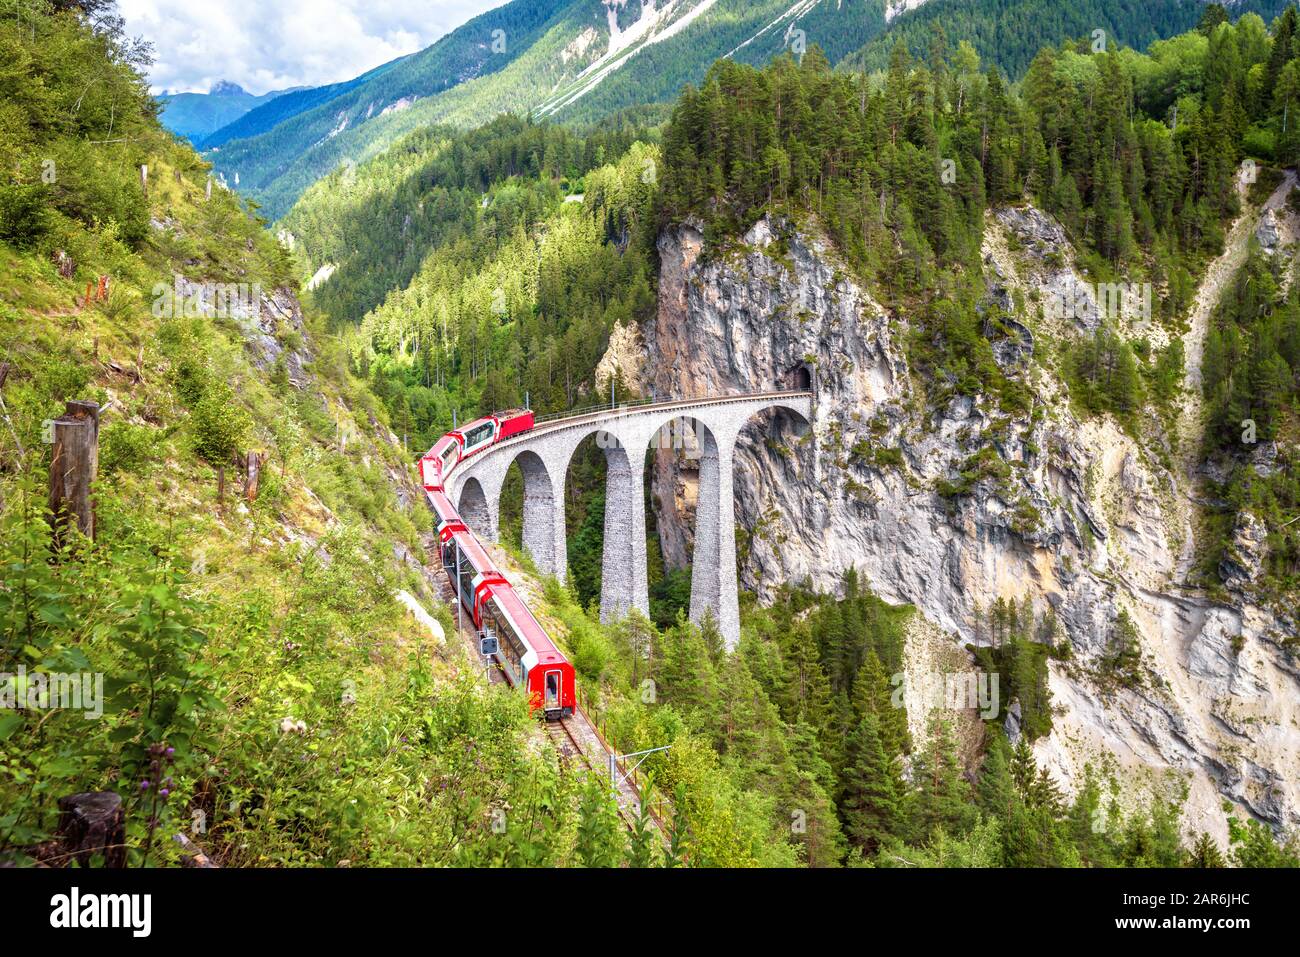 Landwasser-Viadukt in Filisur, Schweiz. Es ist ein berühmtes Wahrzeichen der Schweizer. Berglandschaft mit rotem Bernina-Express auf hoher Brücke. Sceni Stockfoto